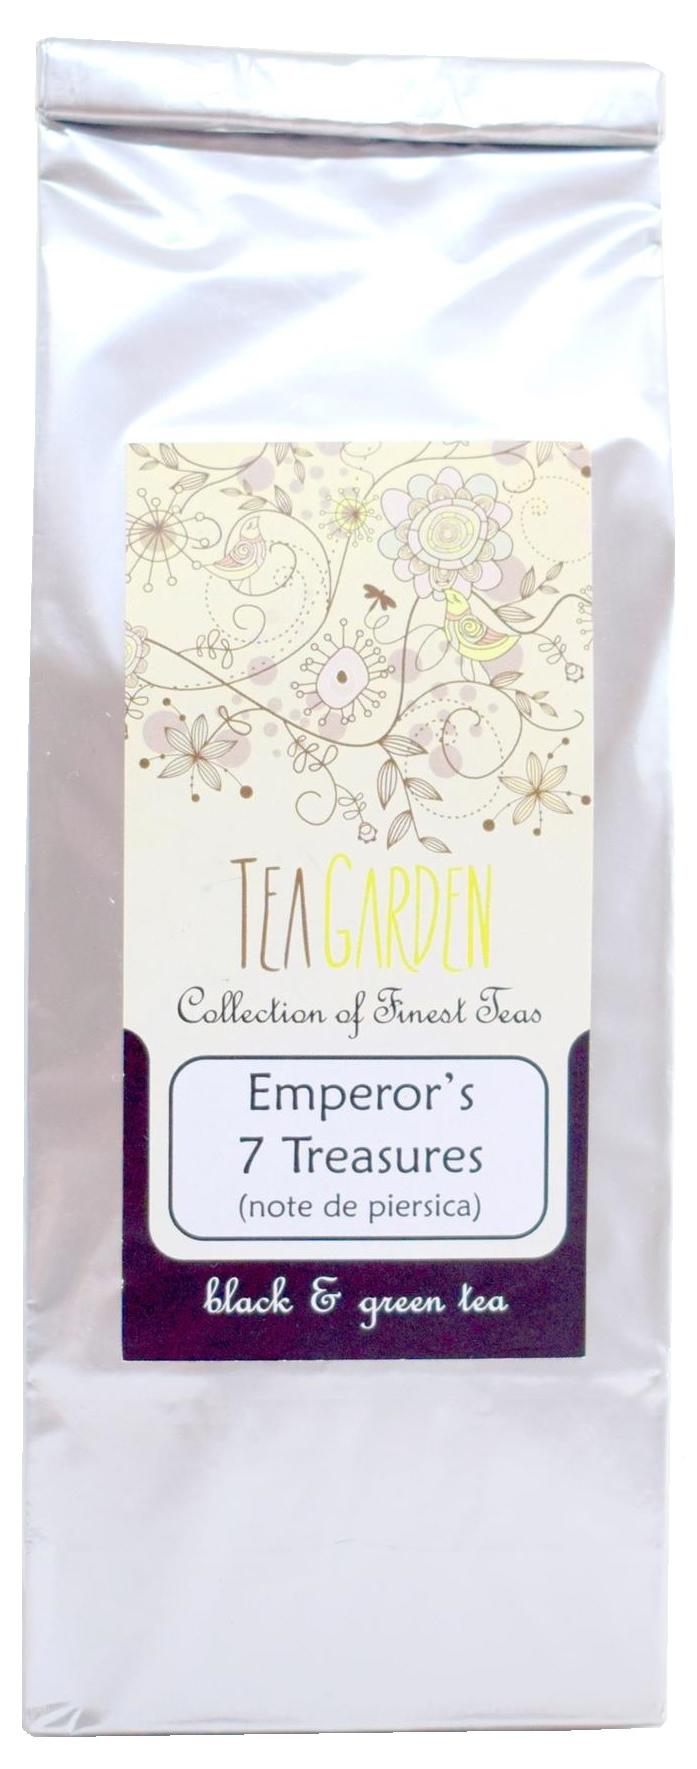 Ceai Emperor's 7 Treasures